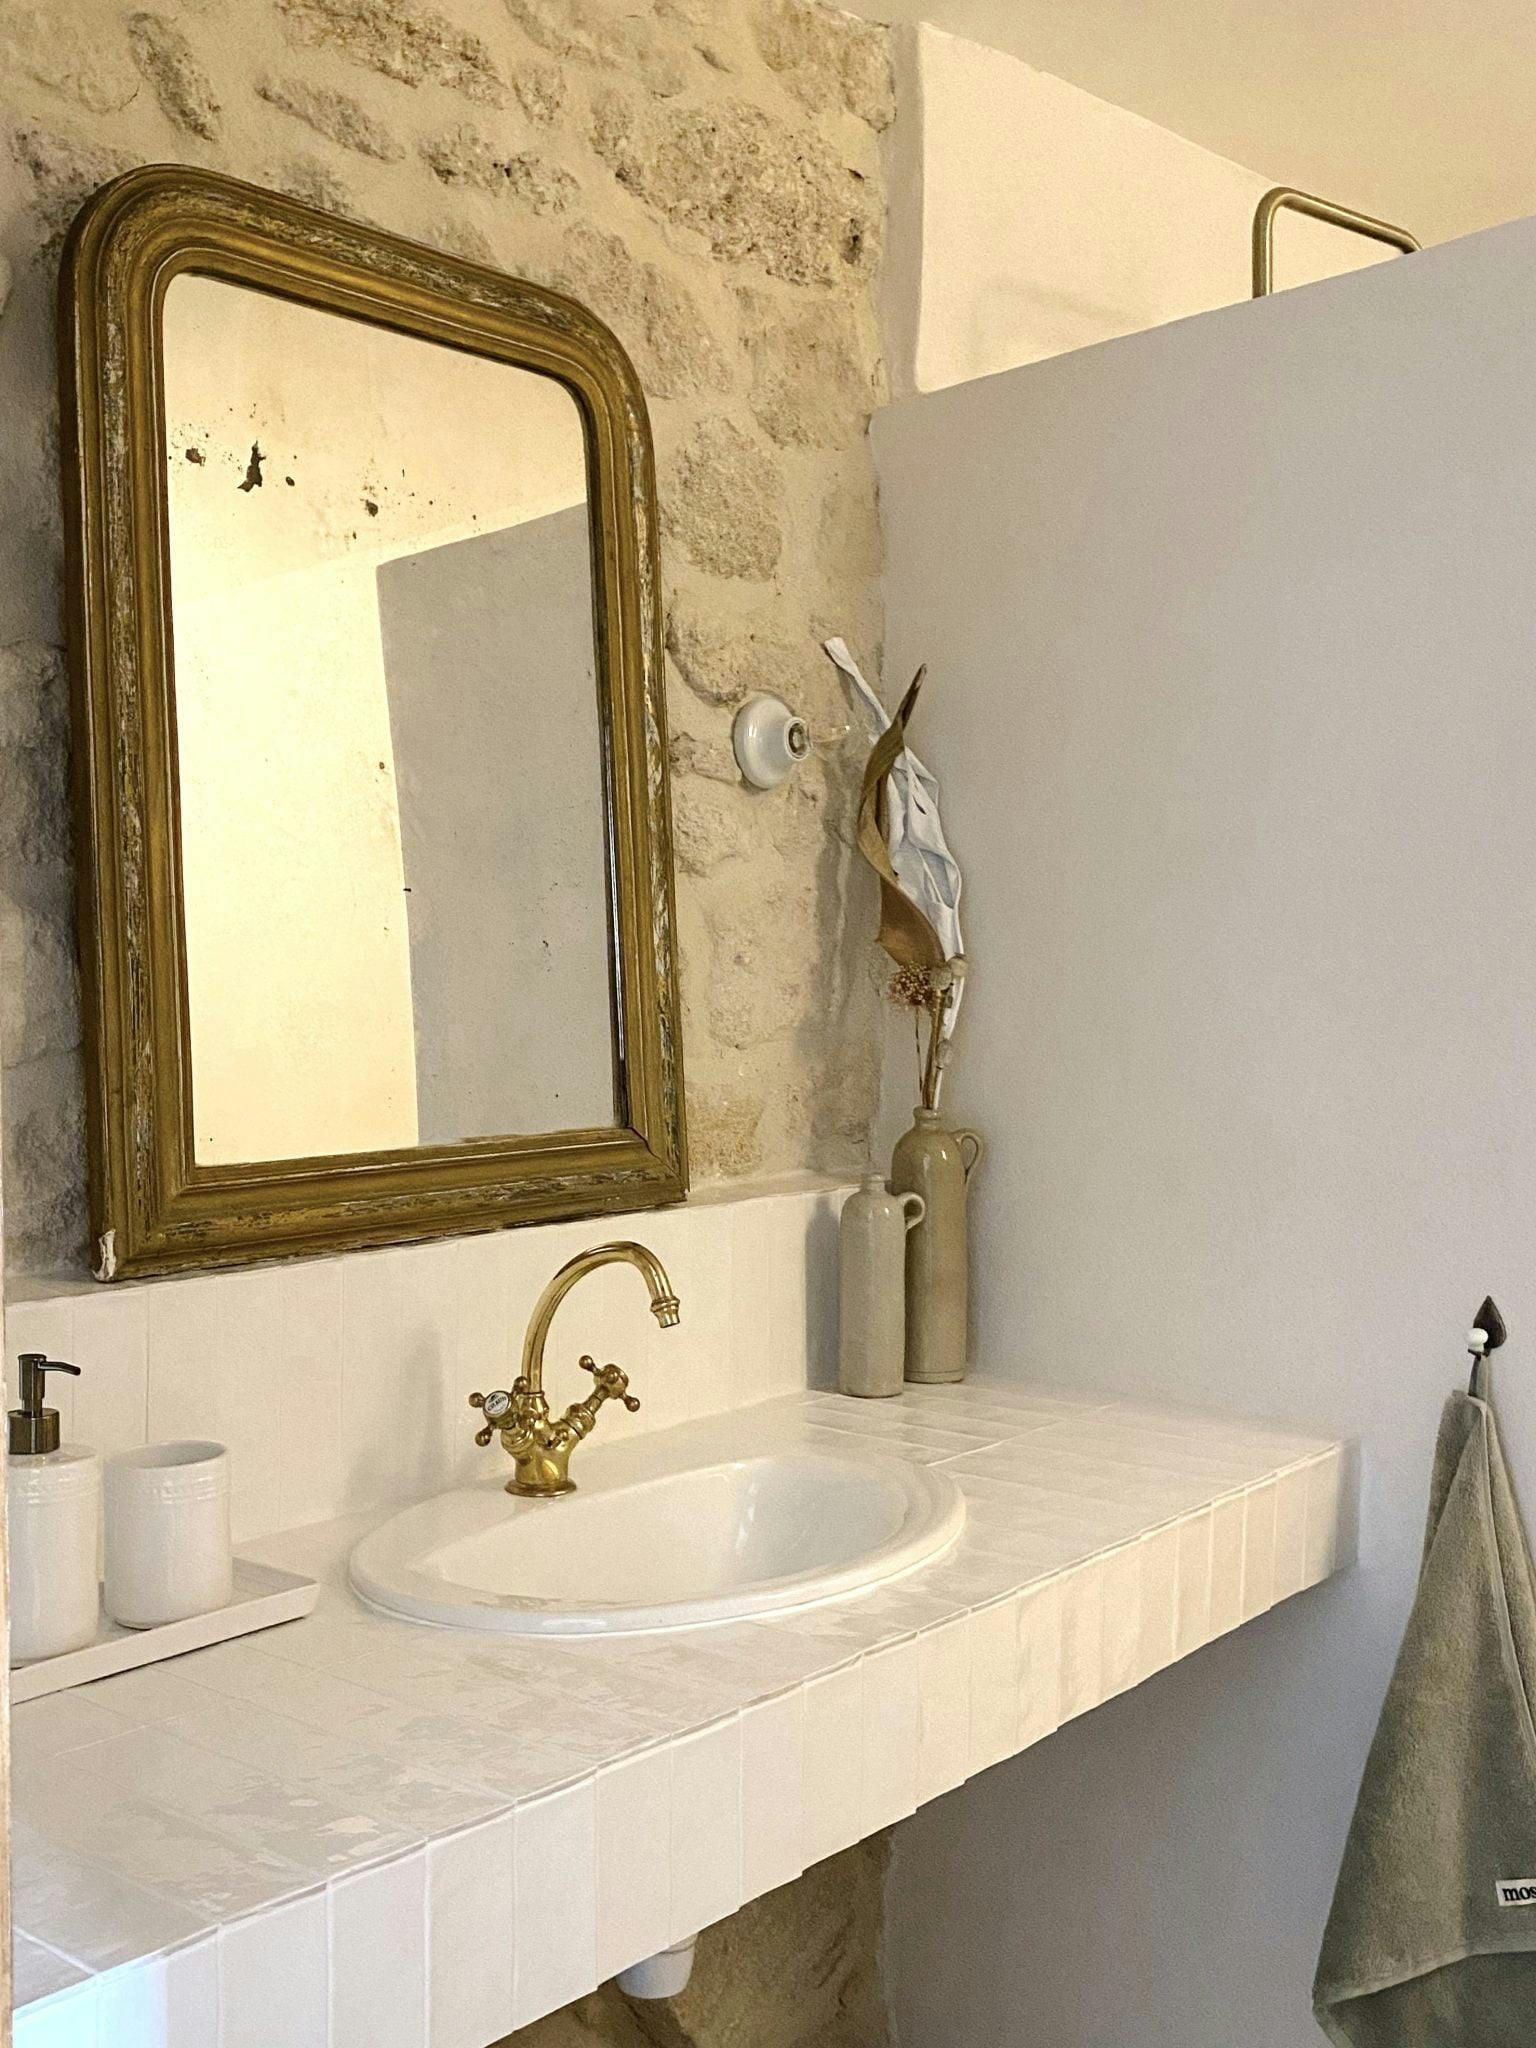 Lavabo et miroir ancien dans un décor de murs en pierre et de faïence